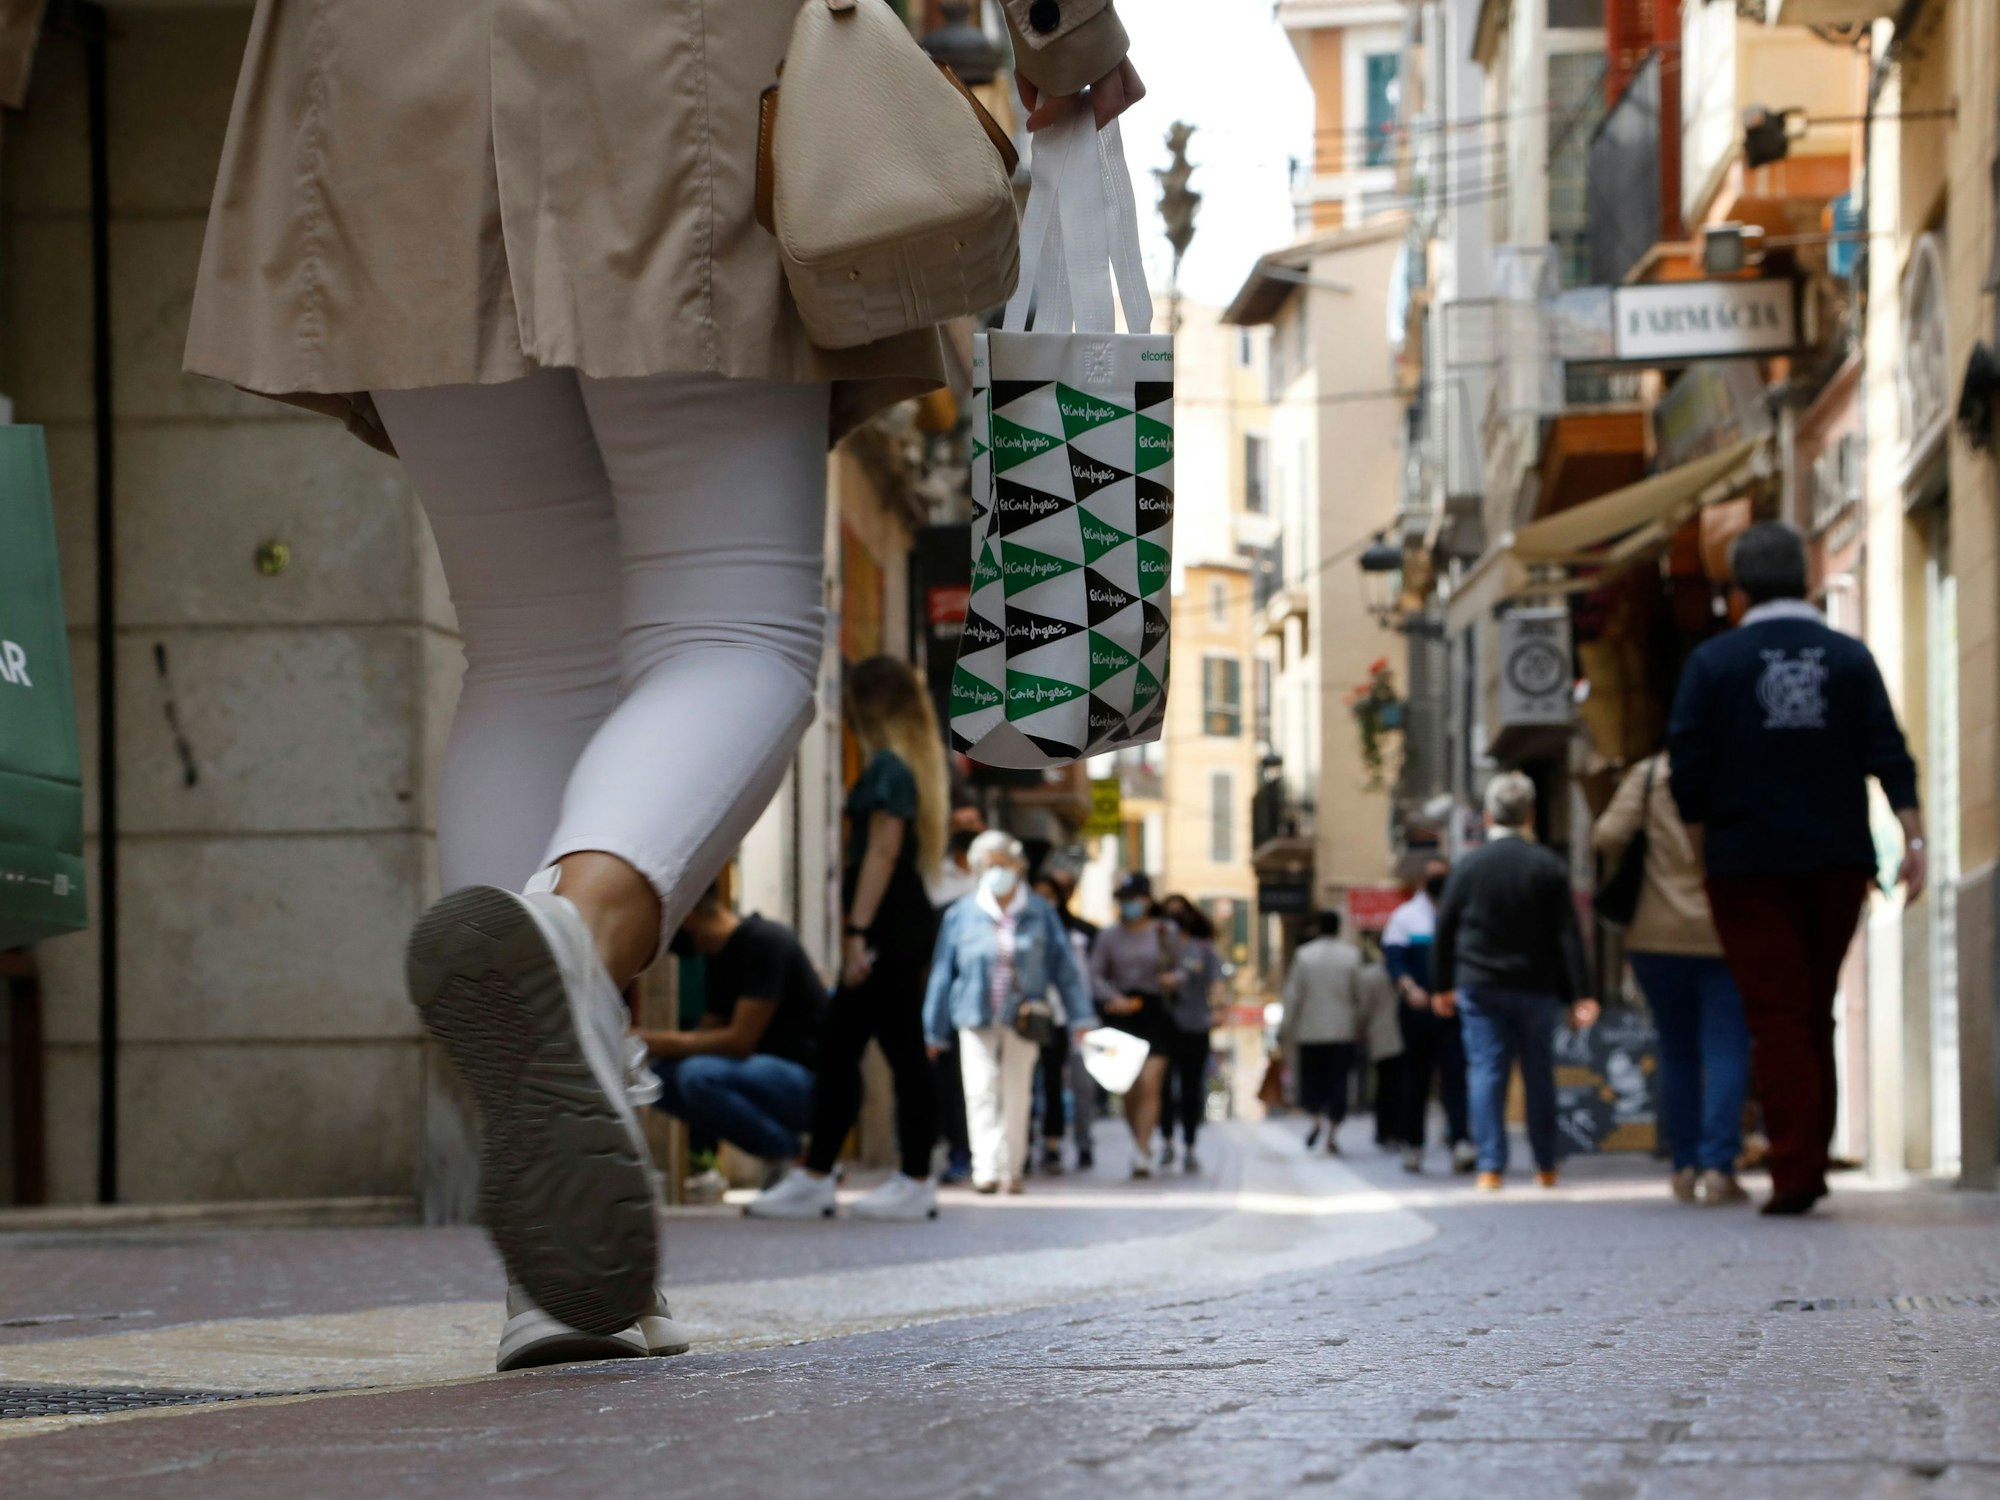 Kunden und Kundinnen mit Einkaufstüten gehen durch eine Einkaufsstraße in Palma auf Mallorca.